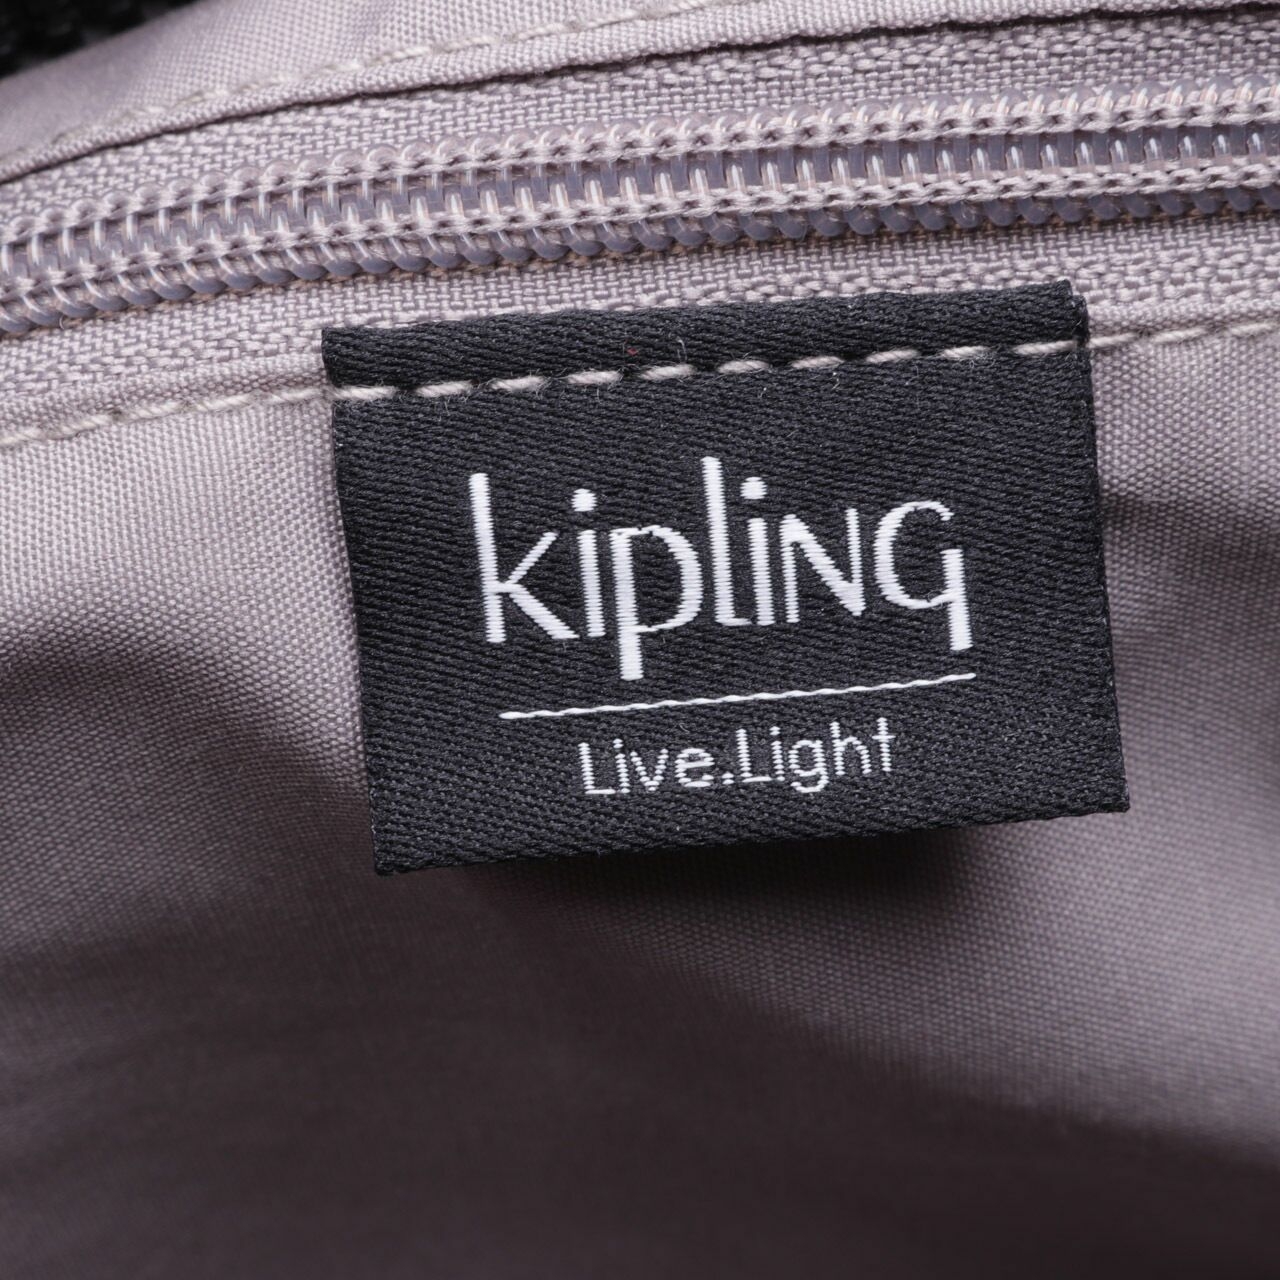 Kipling Black Sling Bag